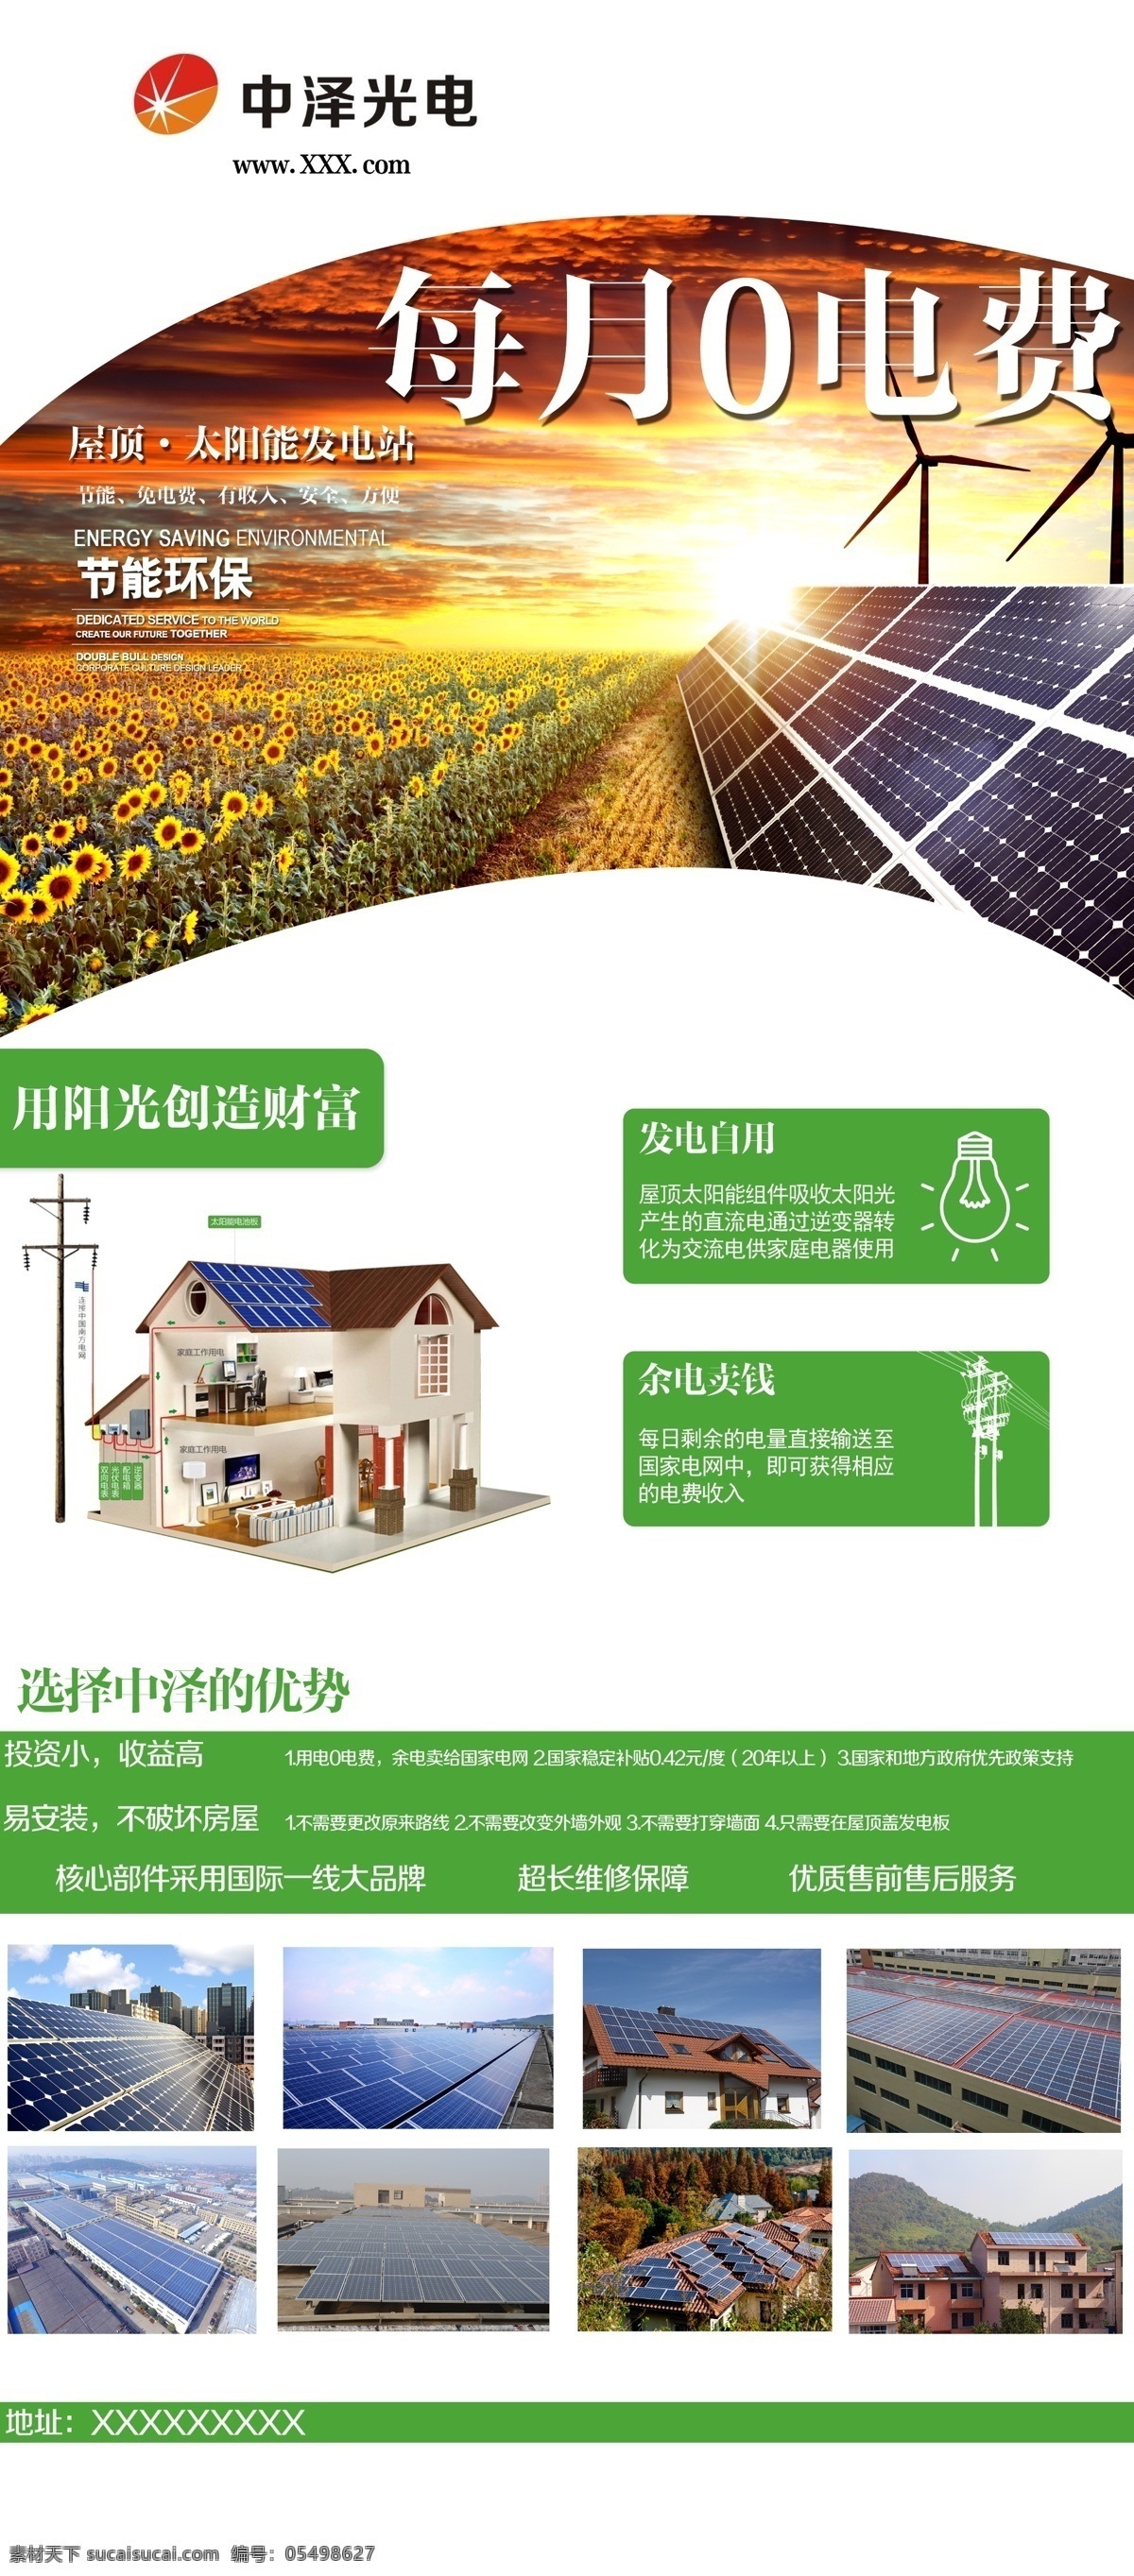 屋顶 光伏 太阳能 发电 海报 广告 模板 屋顶太阳能 太阳能发电板